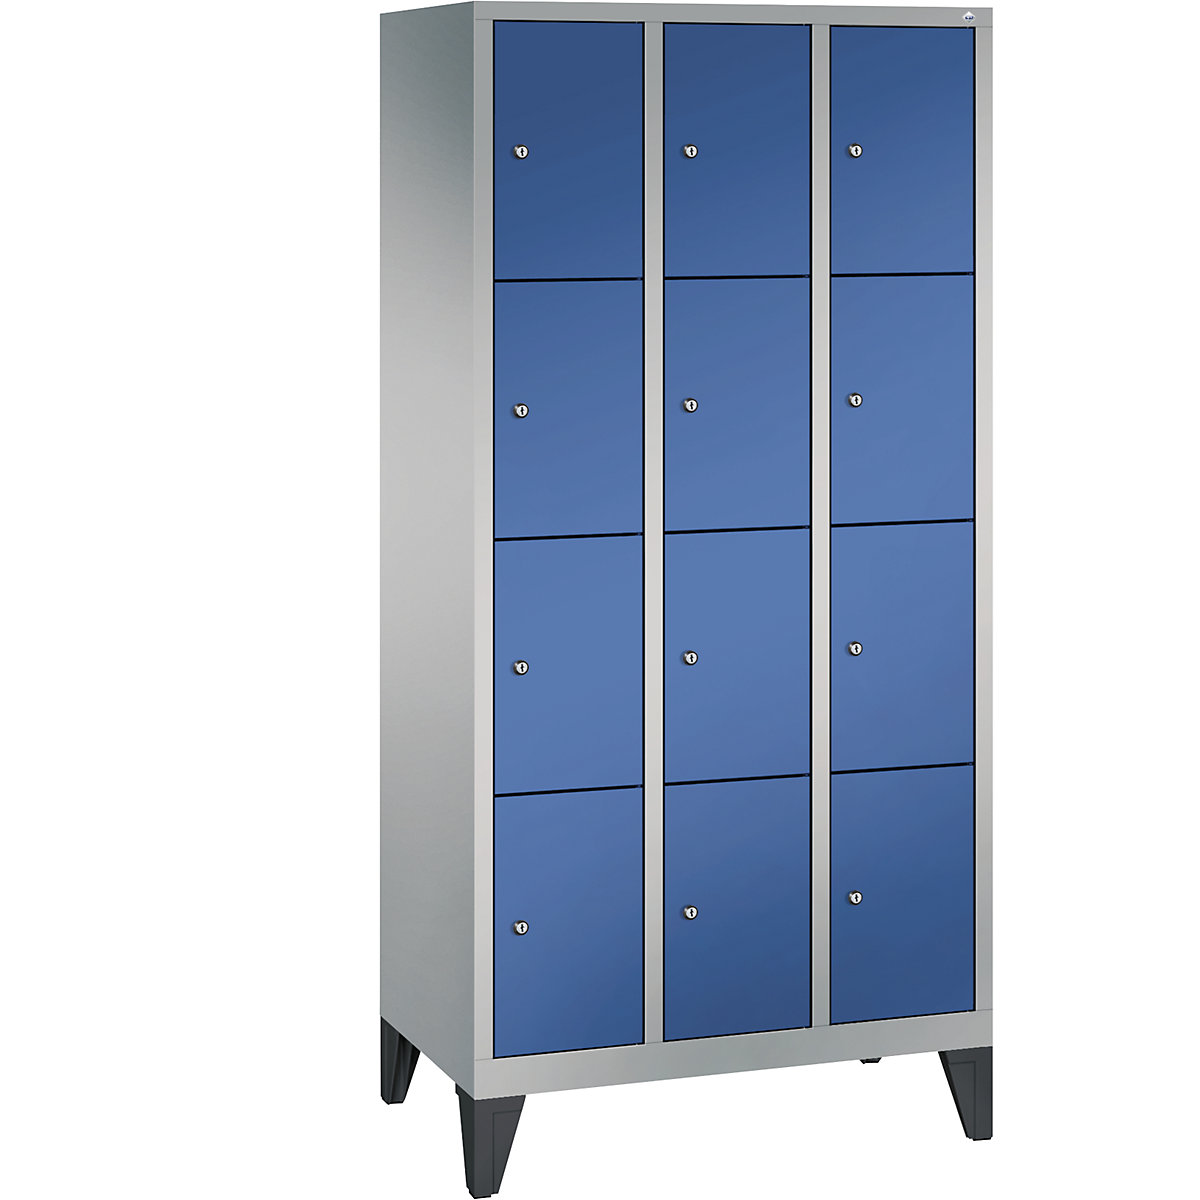 Armoire à casiers sur pieds CLASSIC – C+P, 3 compartiments, 4 casiers chacun, largeur compartiments 300 mm, aluminium / bleu gentiane-13